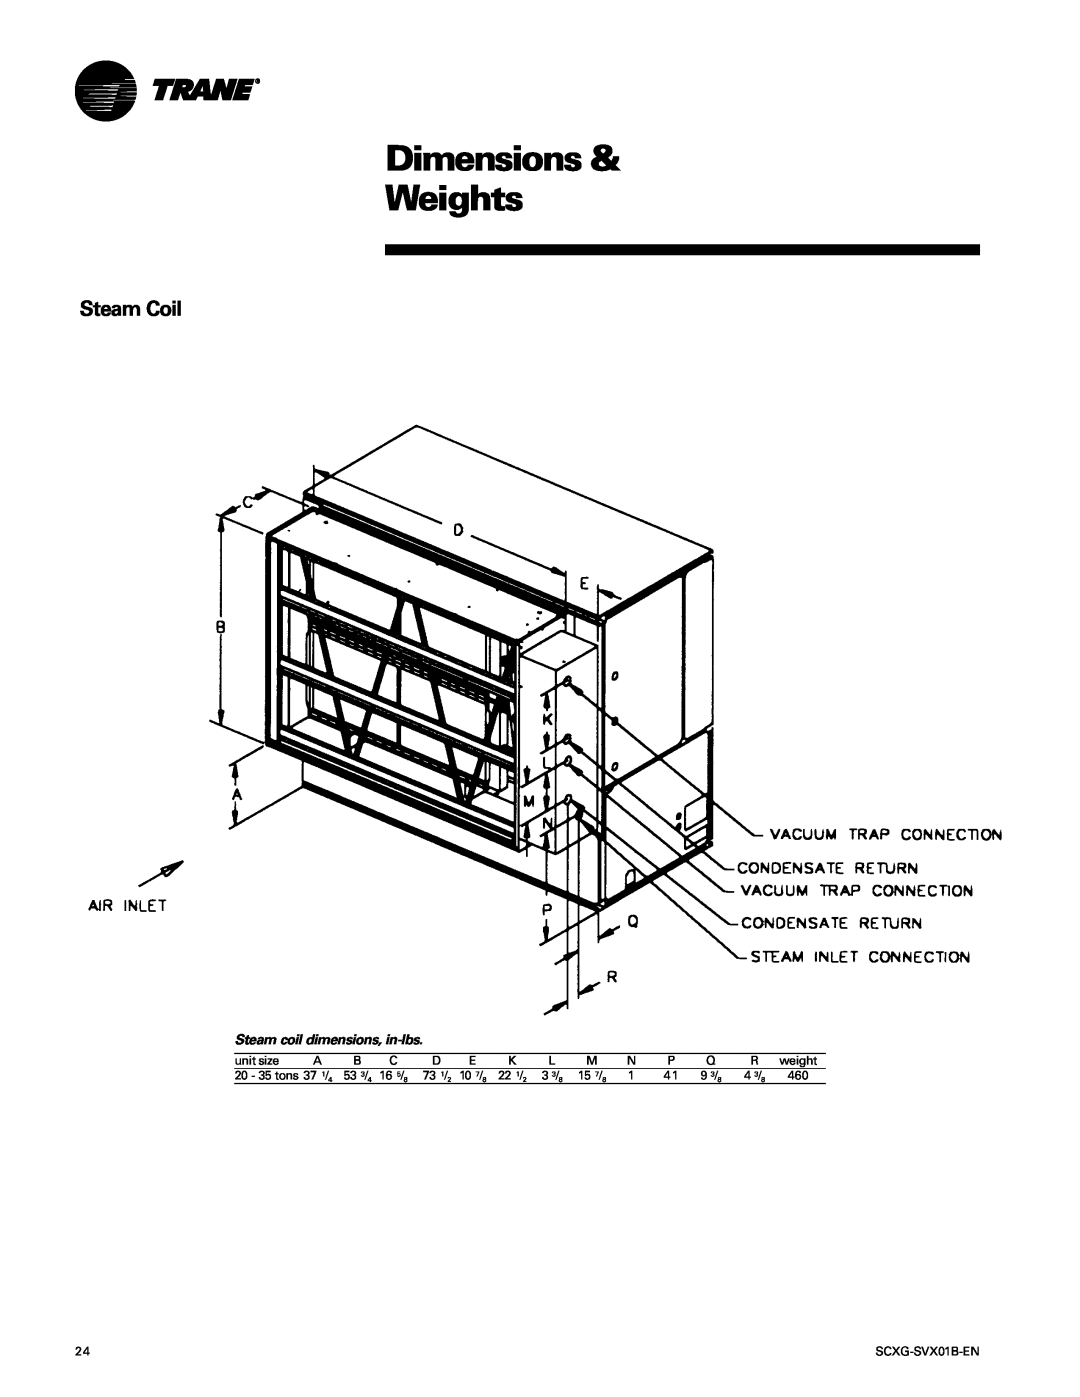 Trane SCXG-SVX01B-EN manual Steam Coil, Dimensions & Weights, Steam coil dimensions, in-lbs 